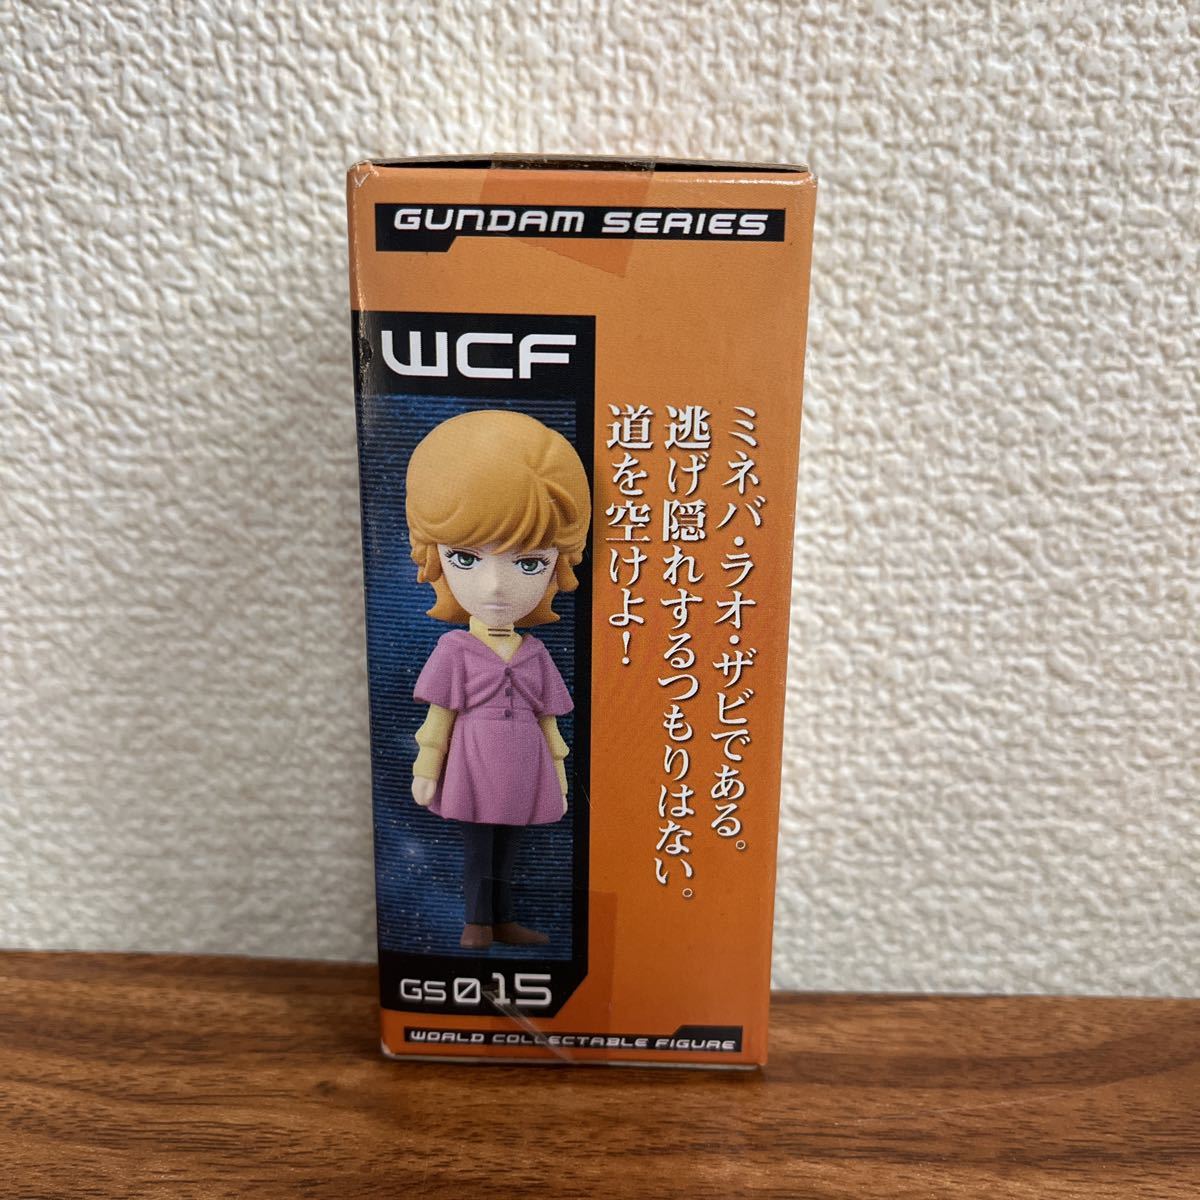  нераспечатанный world коллекционный GS015 Audrey * балка nwa-koreWCF Gundam UC